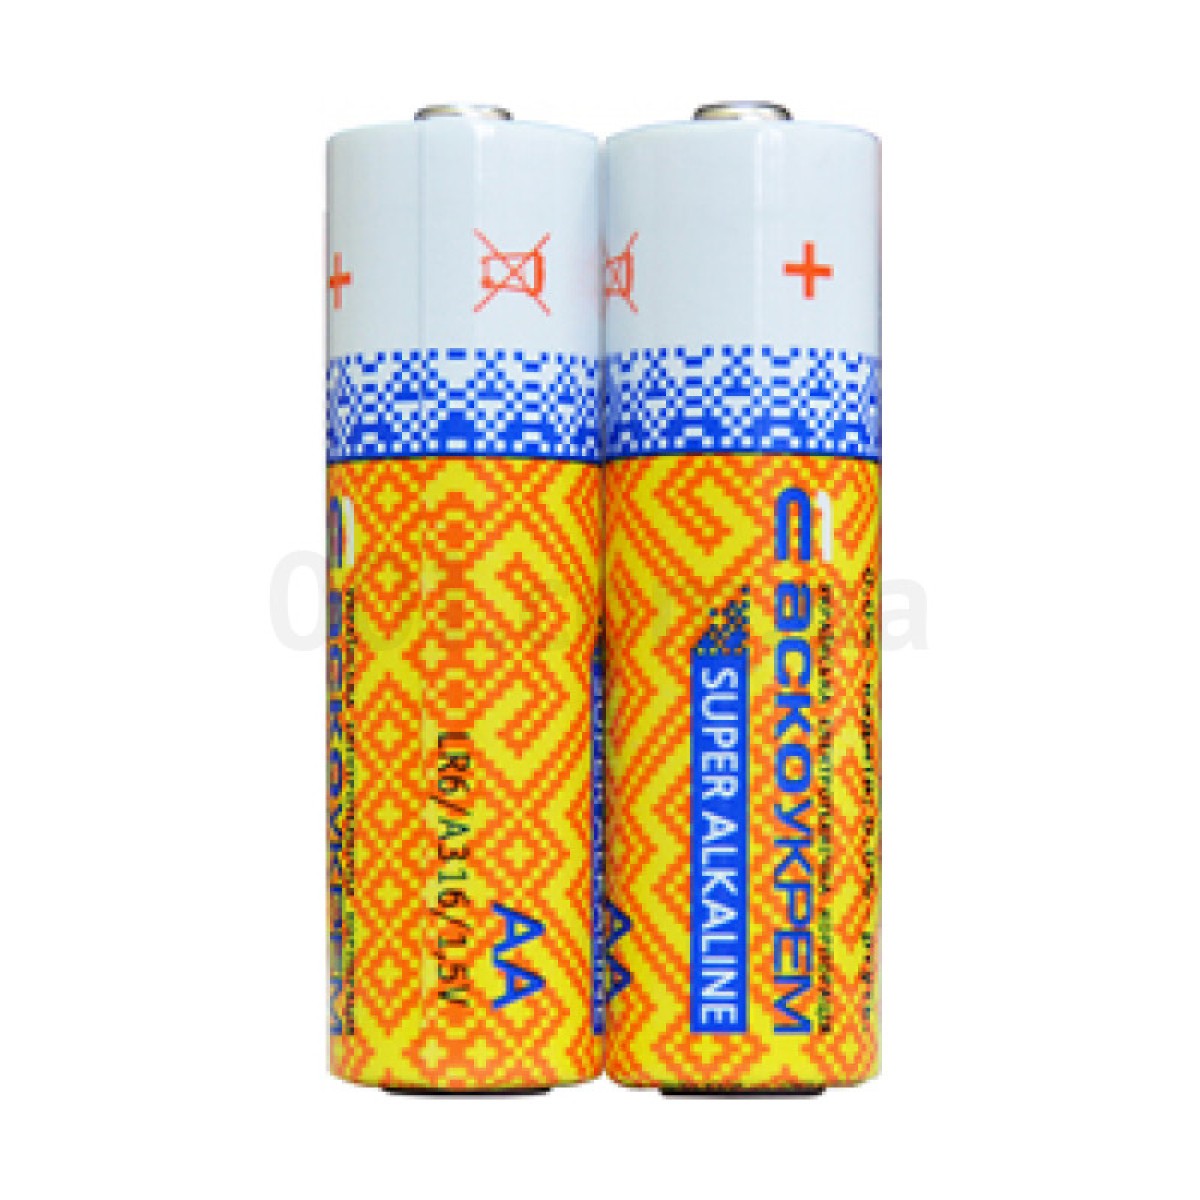 Батарейка лужна AА.LR6.SP2, типорозмір AA упаковка shrink 2 шт., АСКО-УКРЕМ 98_98.jpg